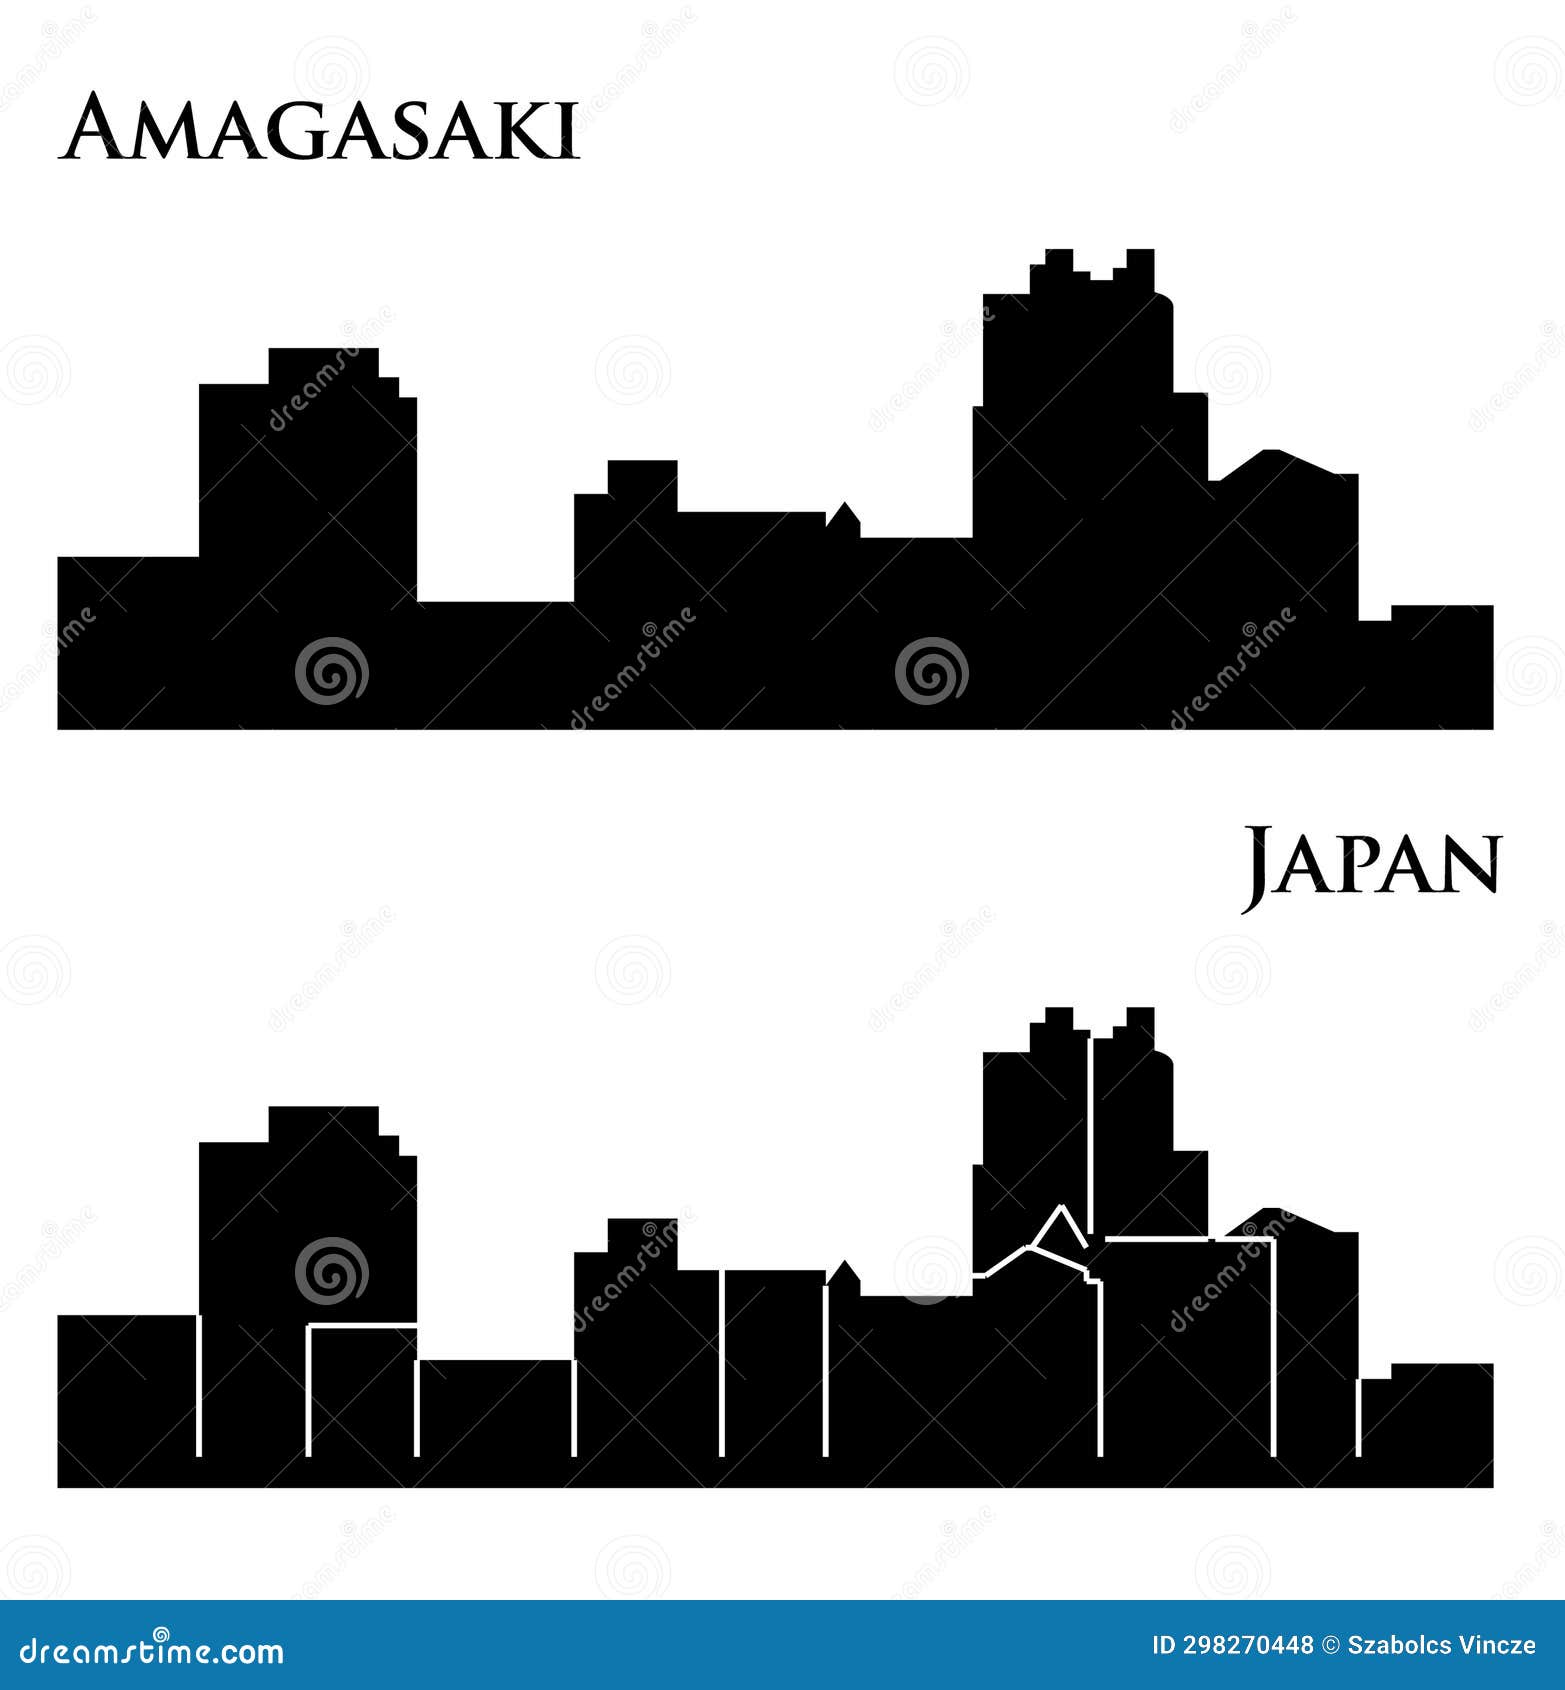 amagasaki, japan